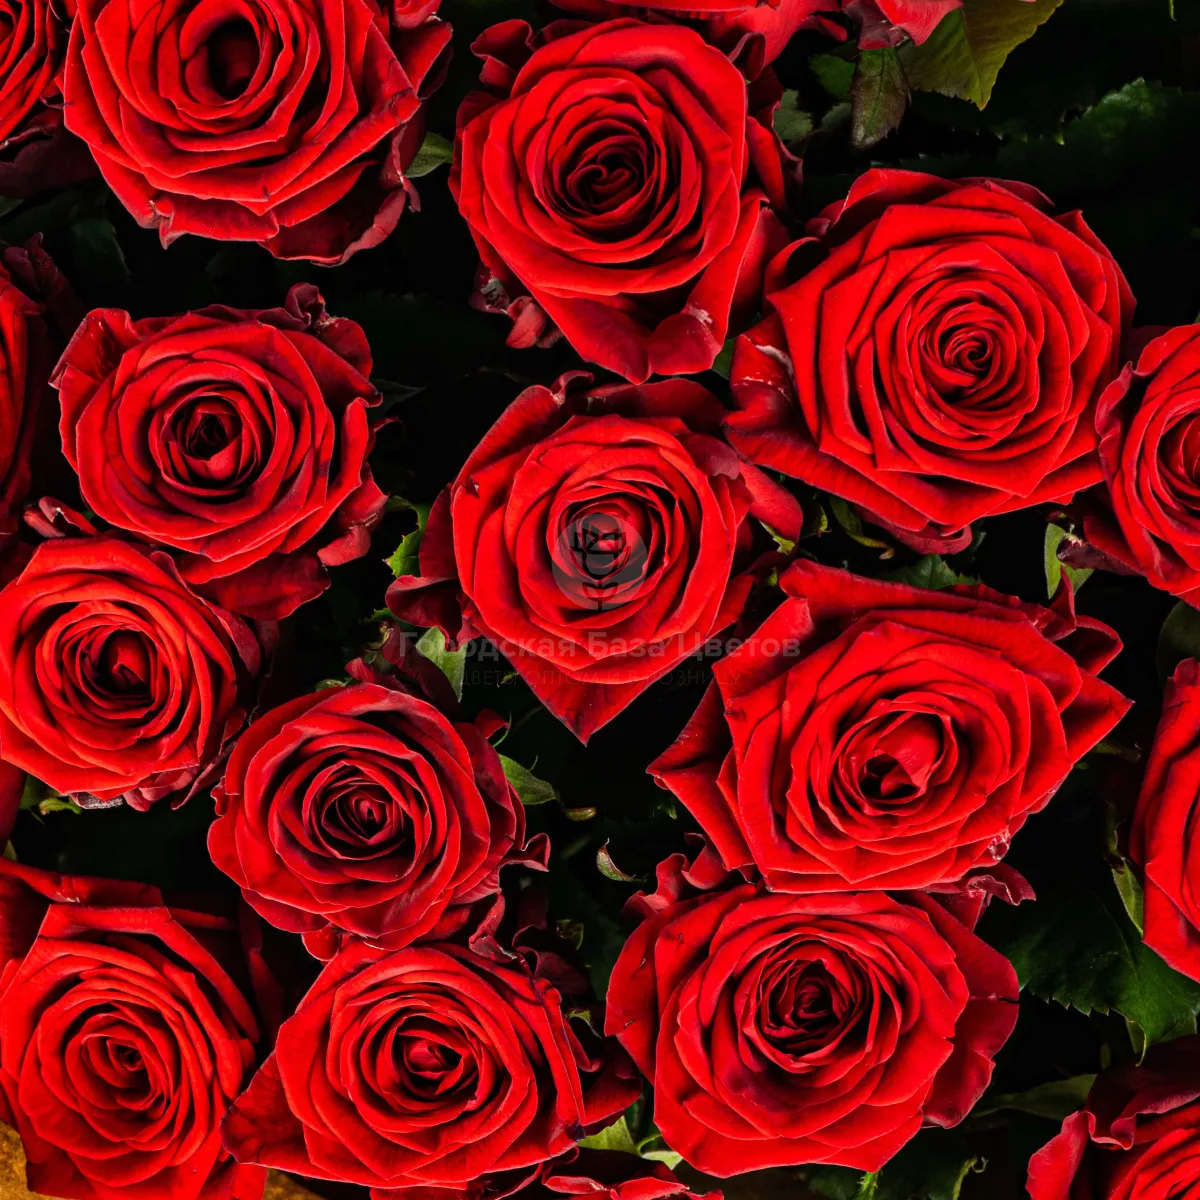 21 красная роза (70 см)